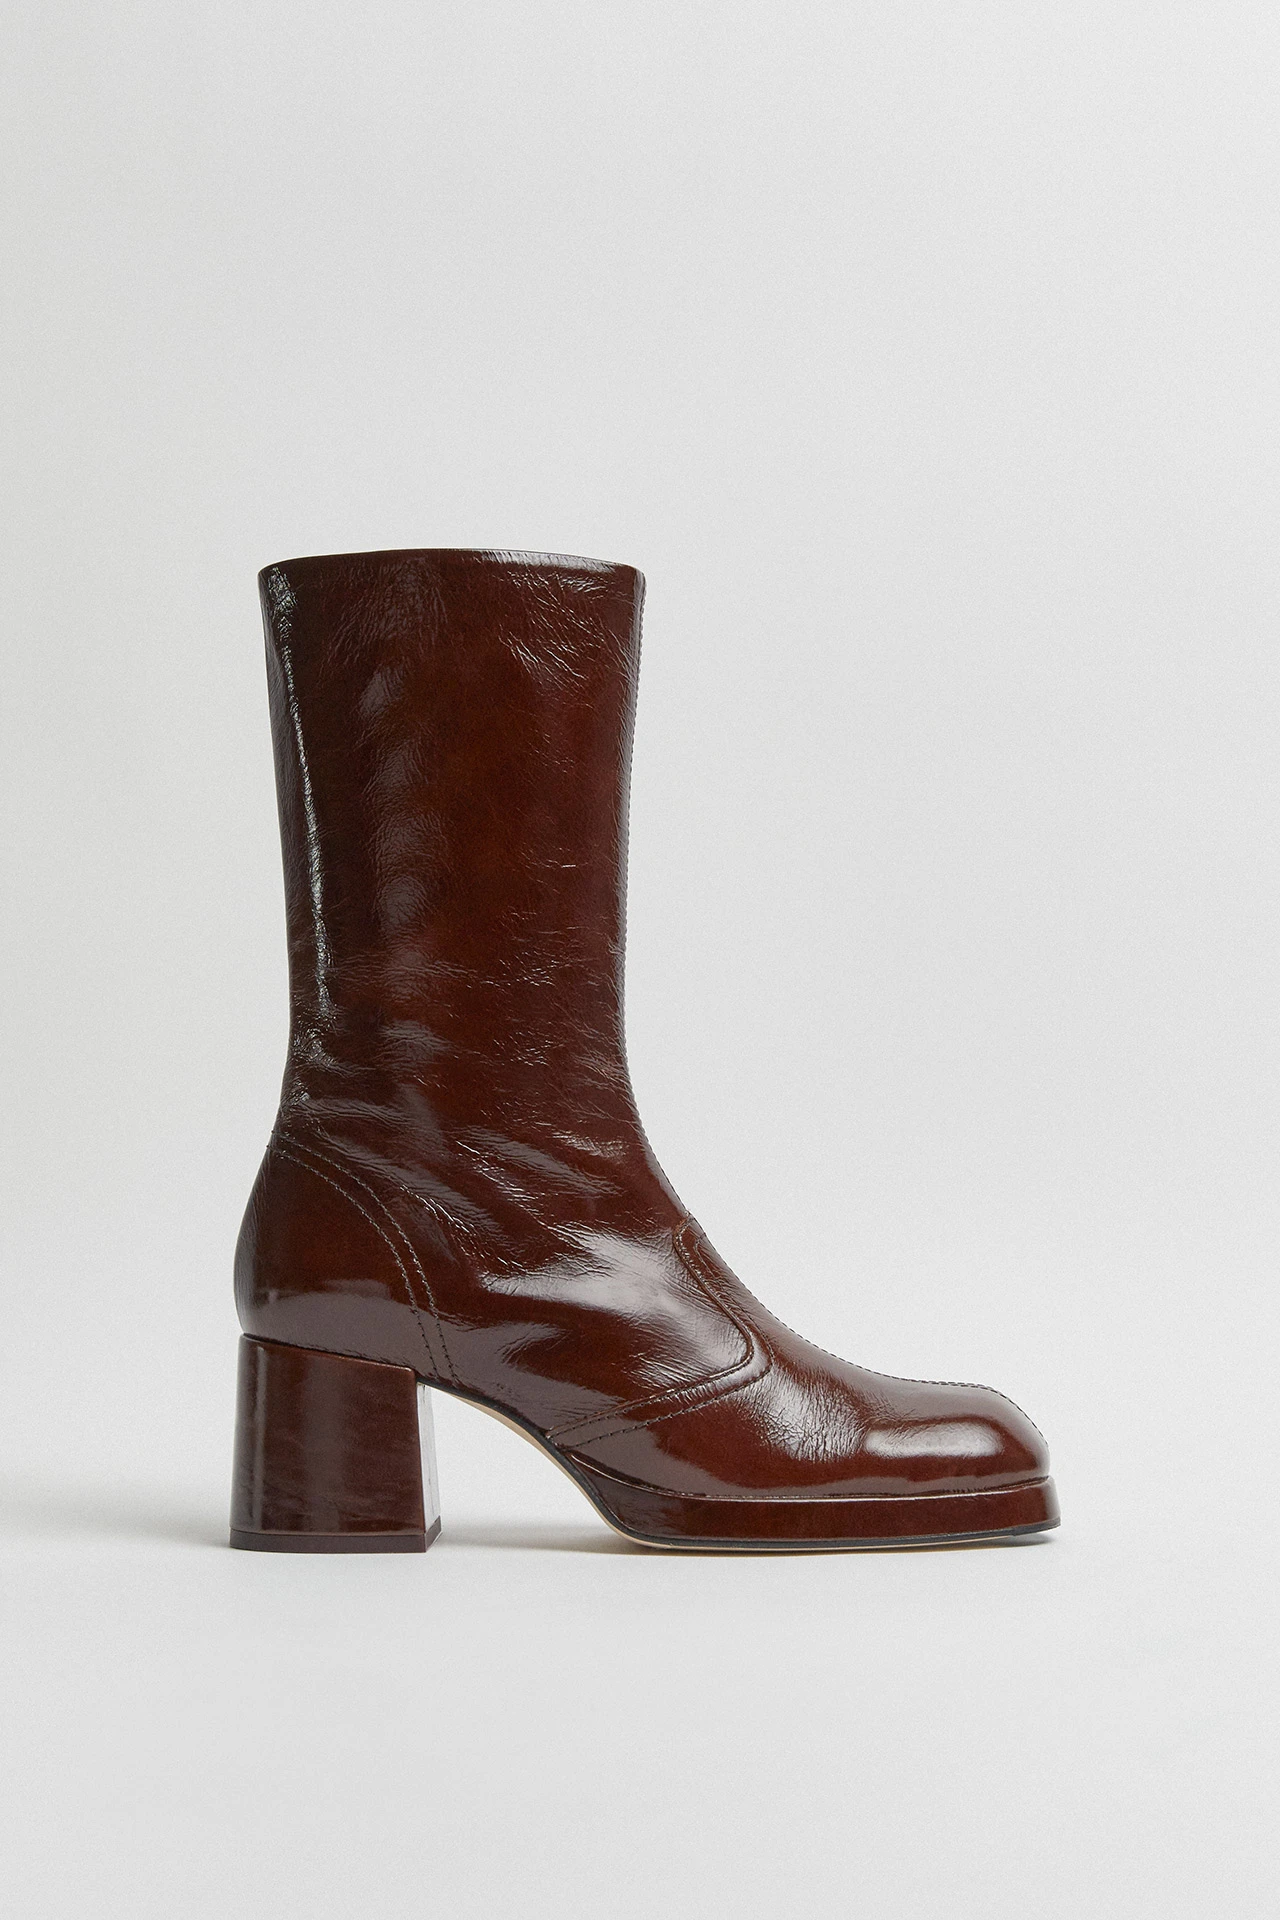 Miista-cass-brown-patent-boots-01